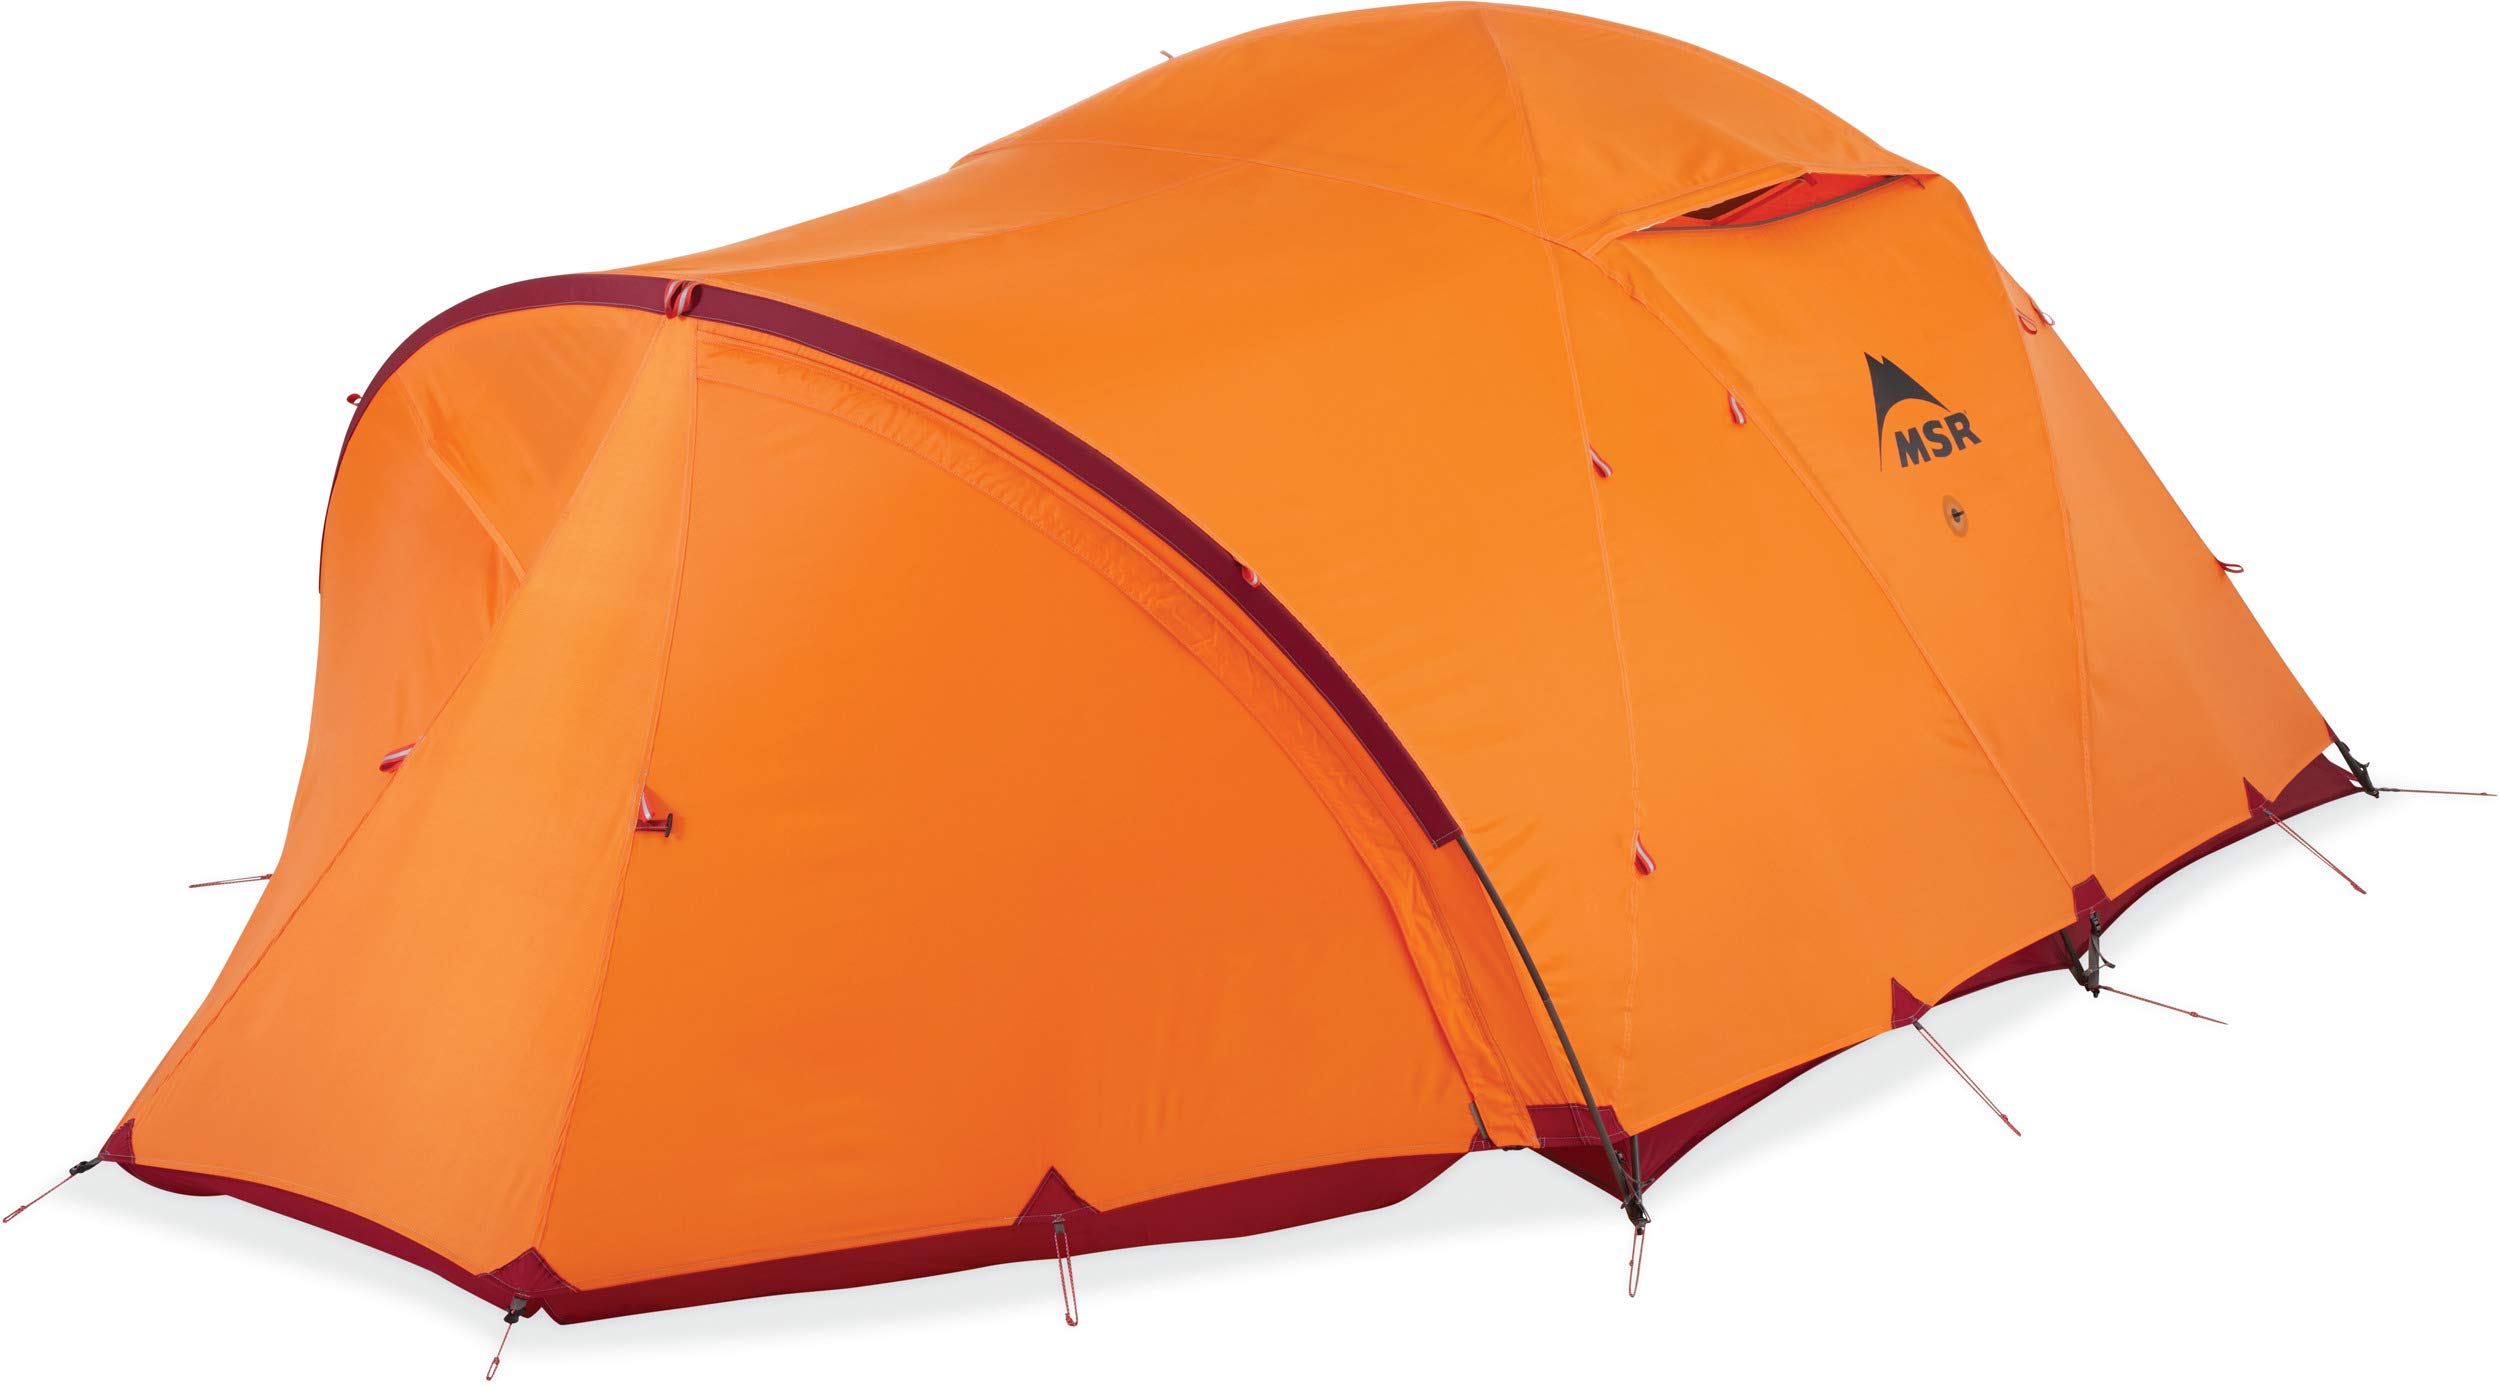 送料無料MSR Remote 4-Season 3-Person Mountaineering Tent with Dome Vestibule並行輸入品